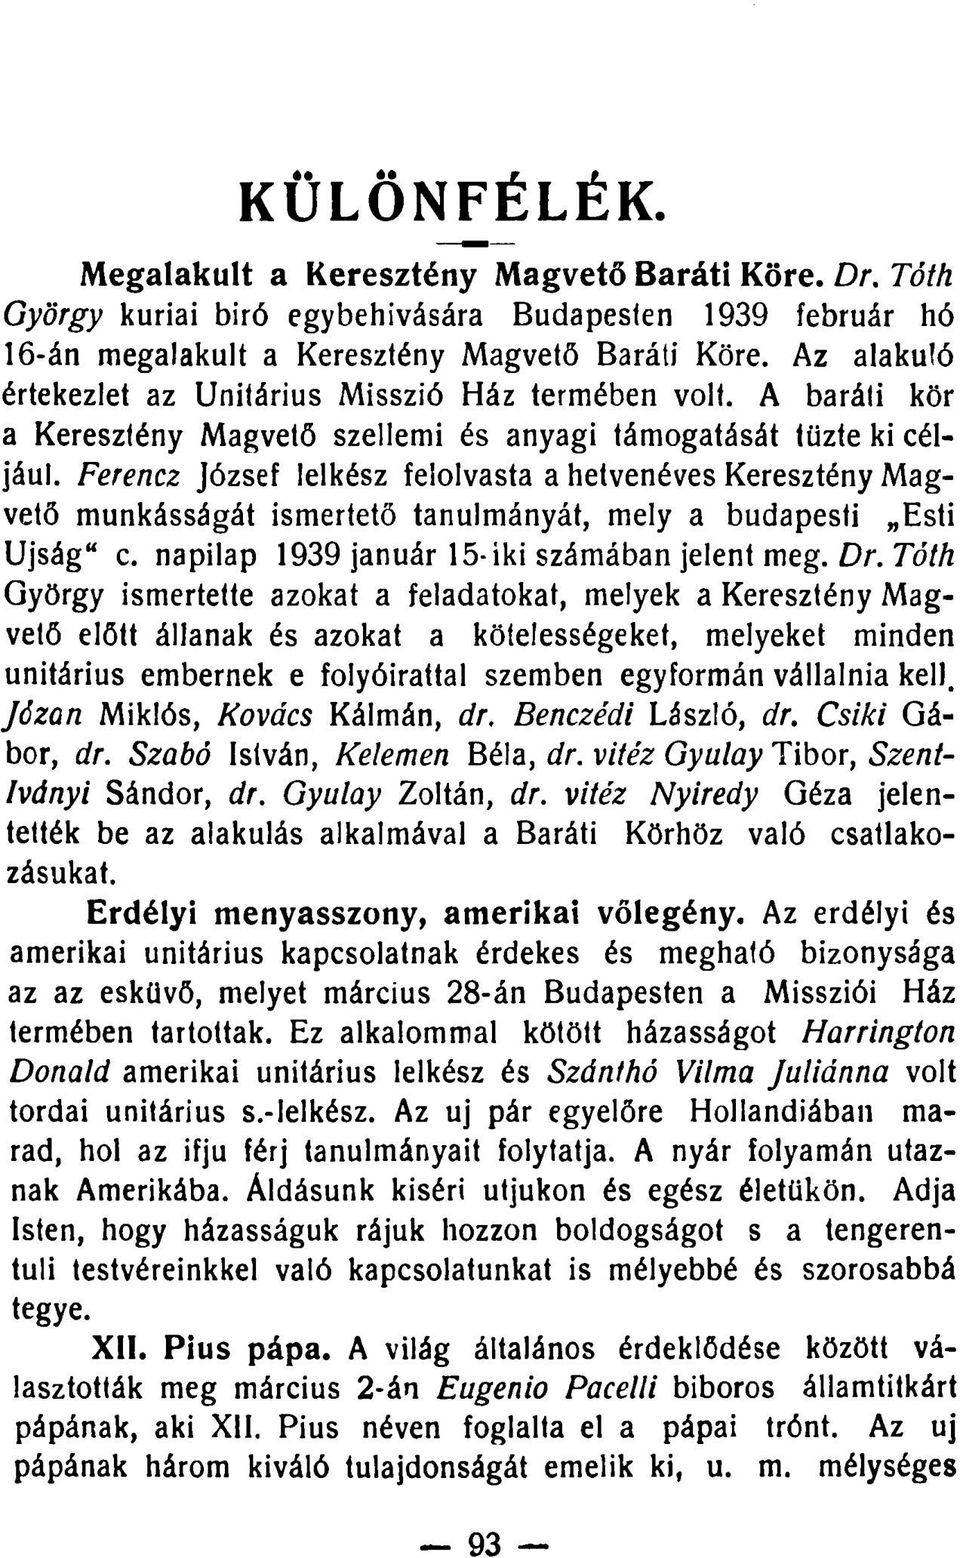 Ferencz József lelkész felolvasta a hetvenéves Keresztény Magvető munkásságát ismertető tanulmányát, mely a budapesti Esti Újság" c. napilap 1939 január 15-iki számában jelent meg. Dr.